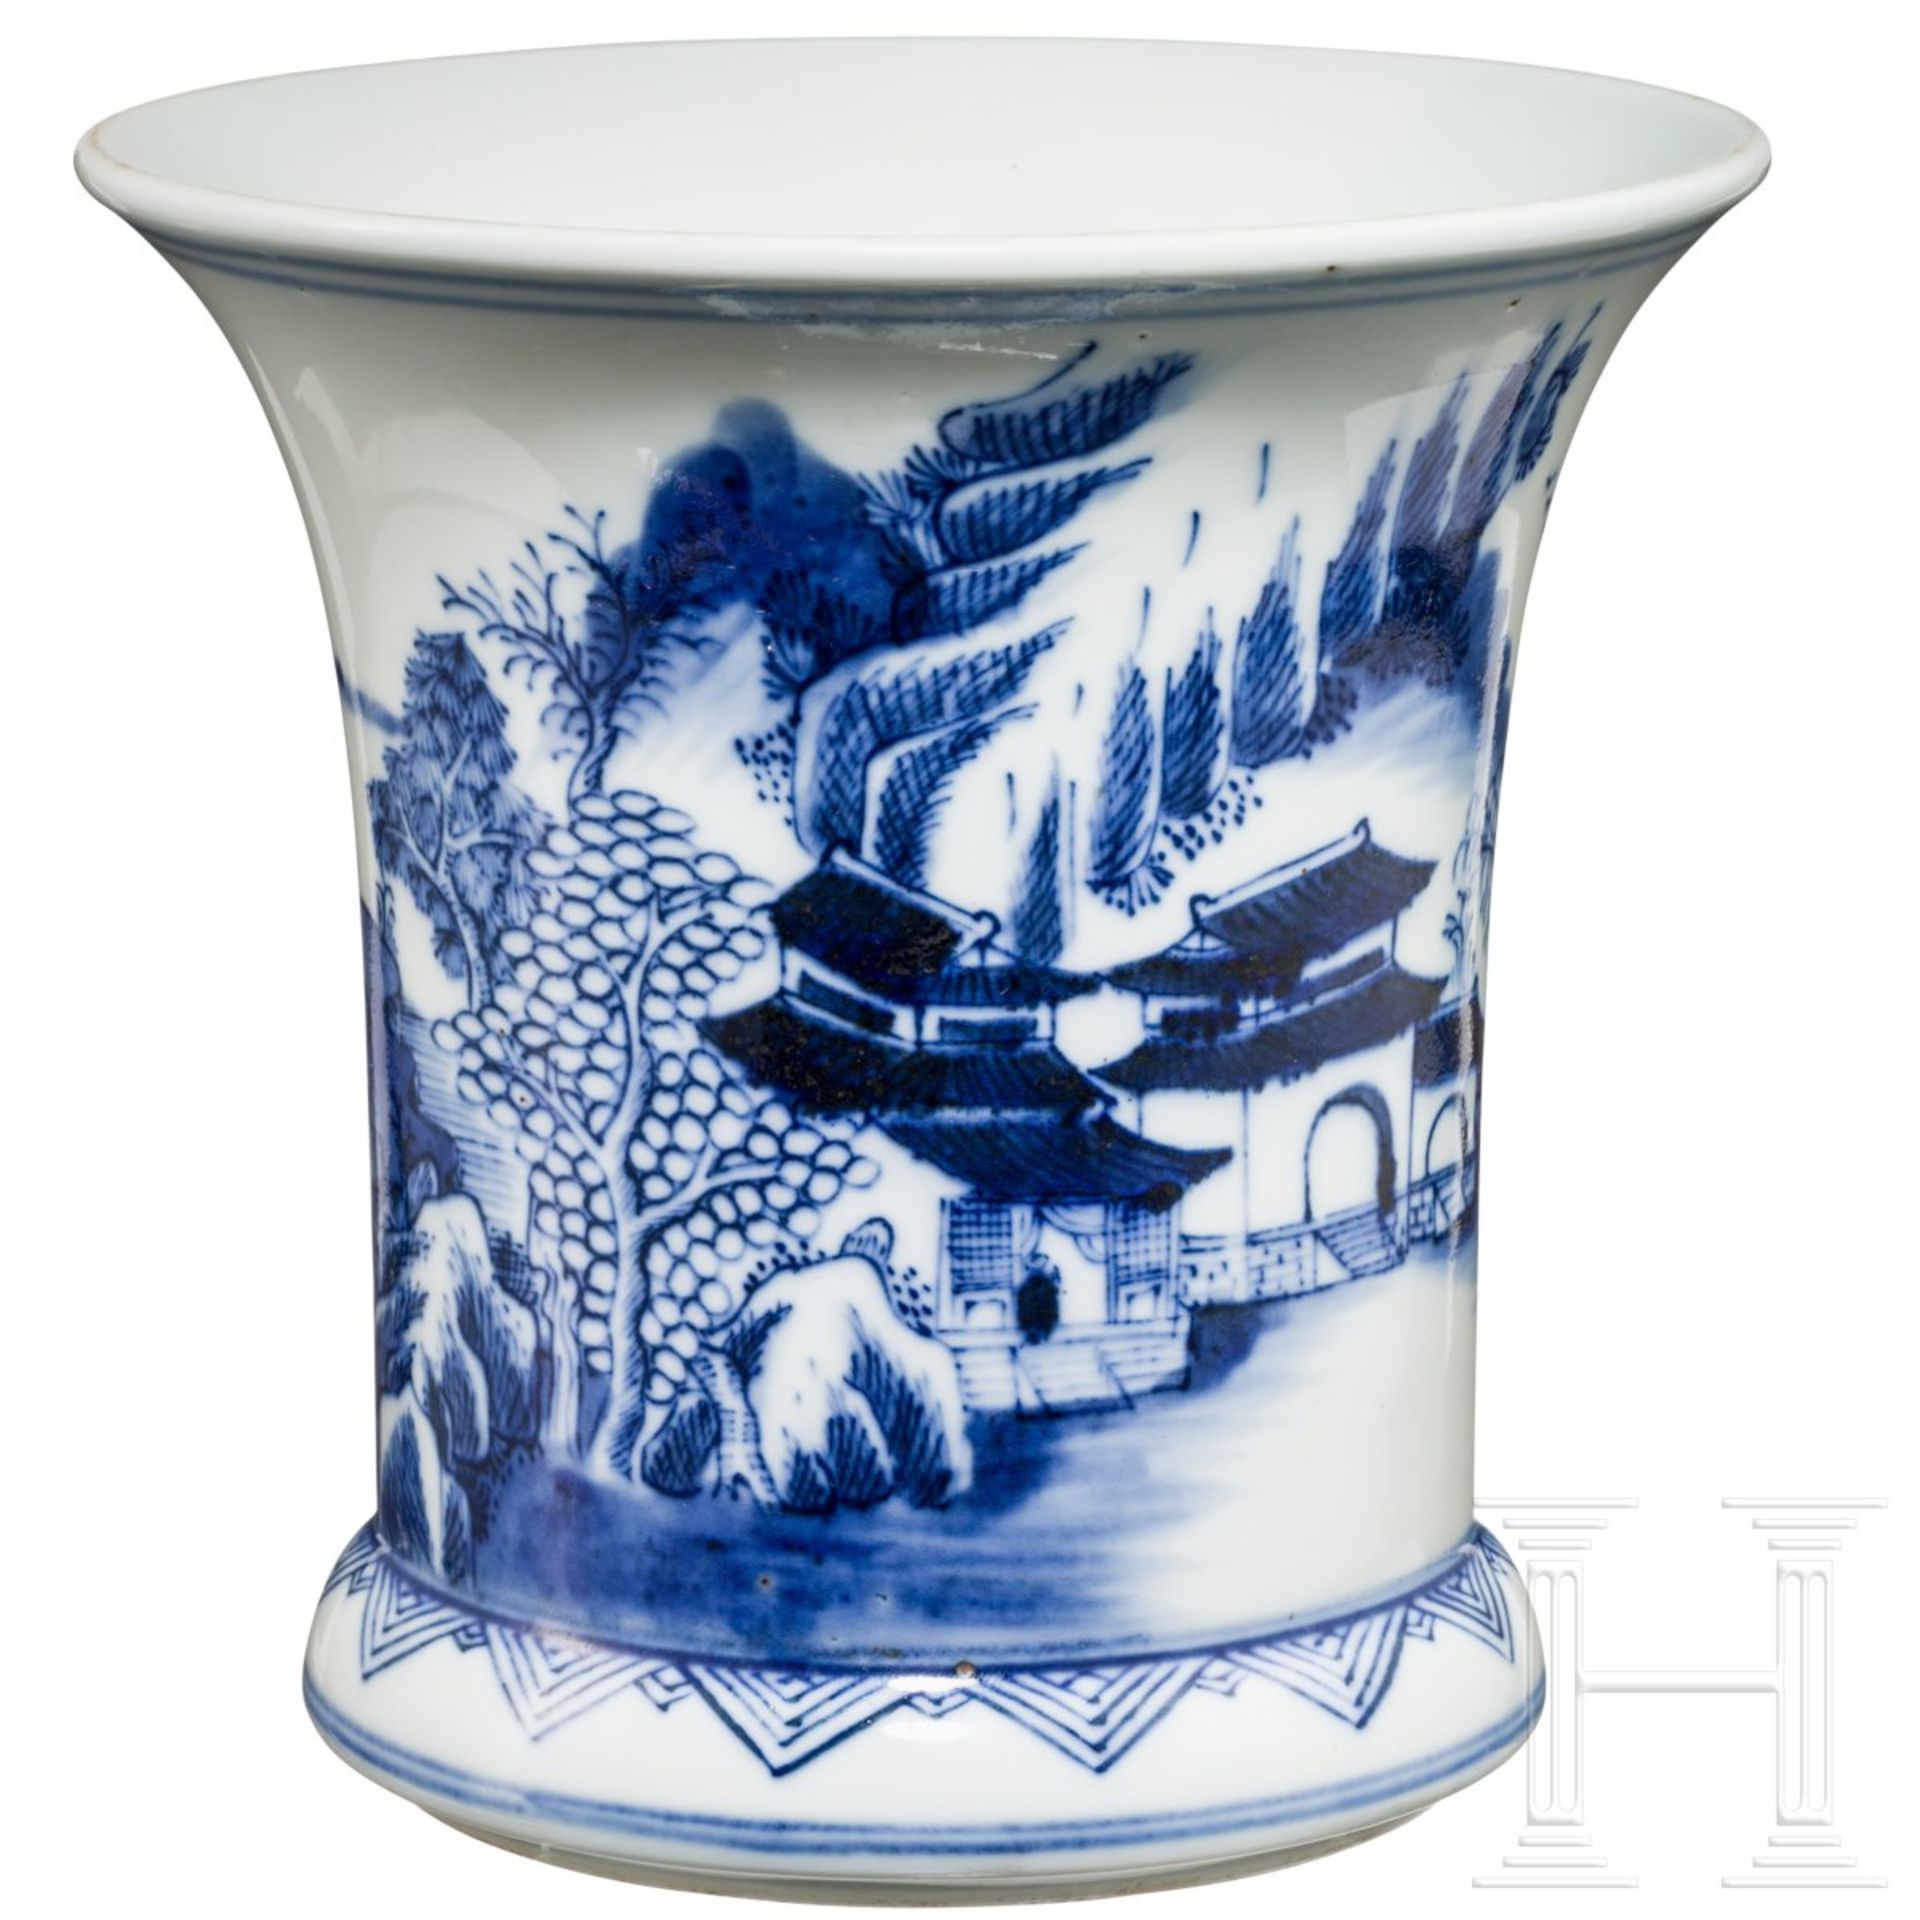 Kleine Gu-Vase mit Landschaftsszene blau auf weiß, China, späte Qing-Zeit - Bild 3 aus 7